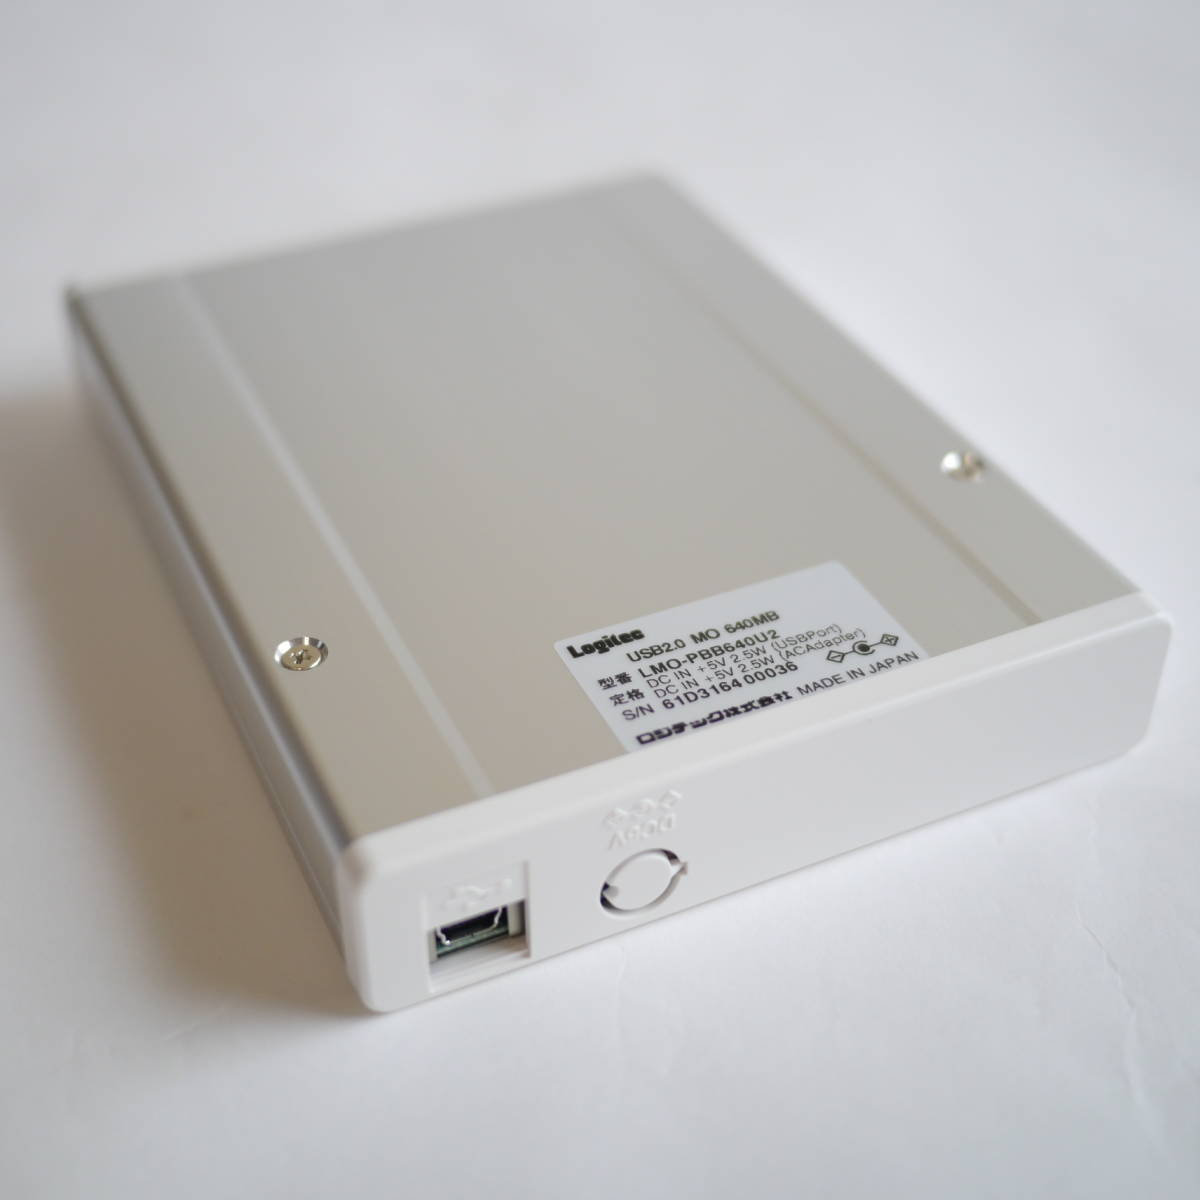 Logitec ポータブルタイプ USB 2.0 外付型640MB MOドライブ LMO-PBB640U2 通販